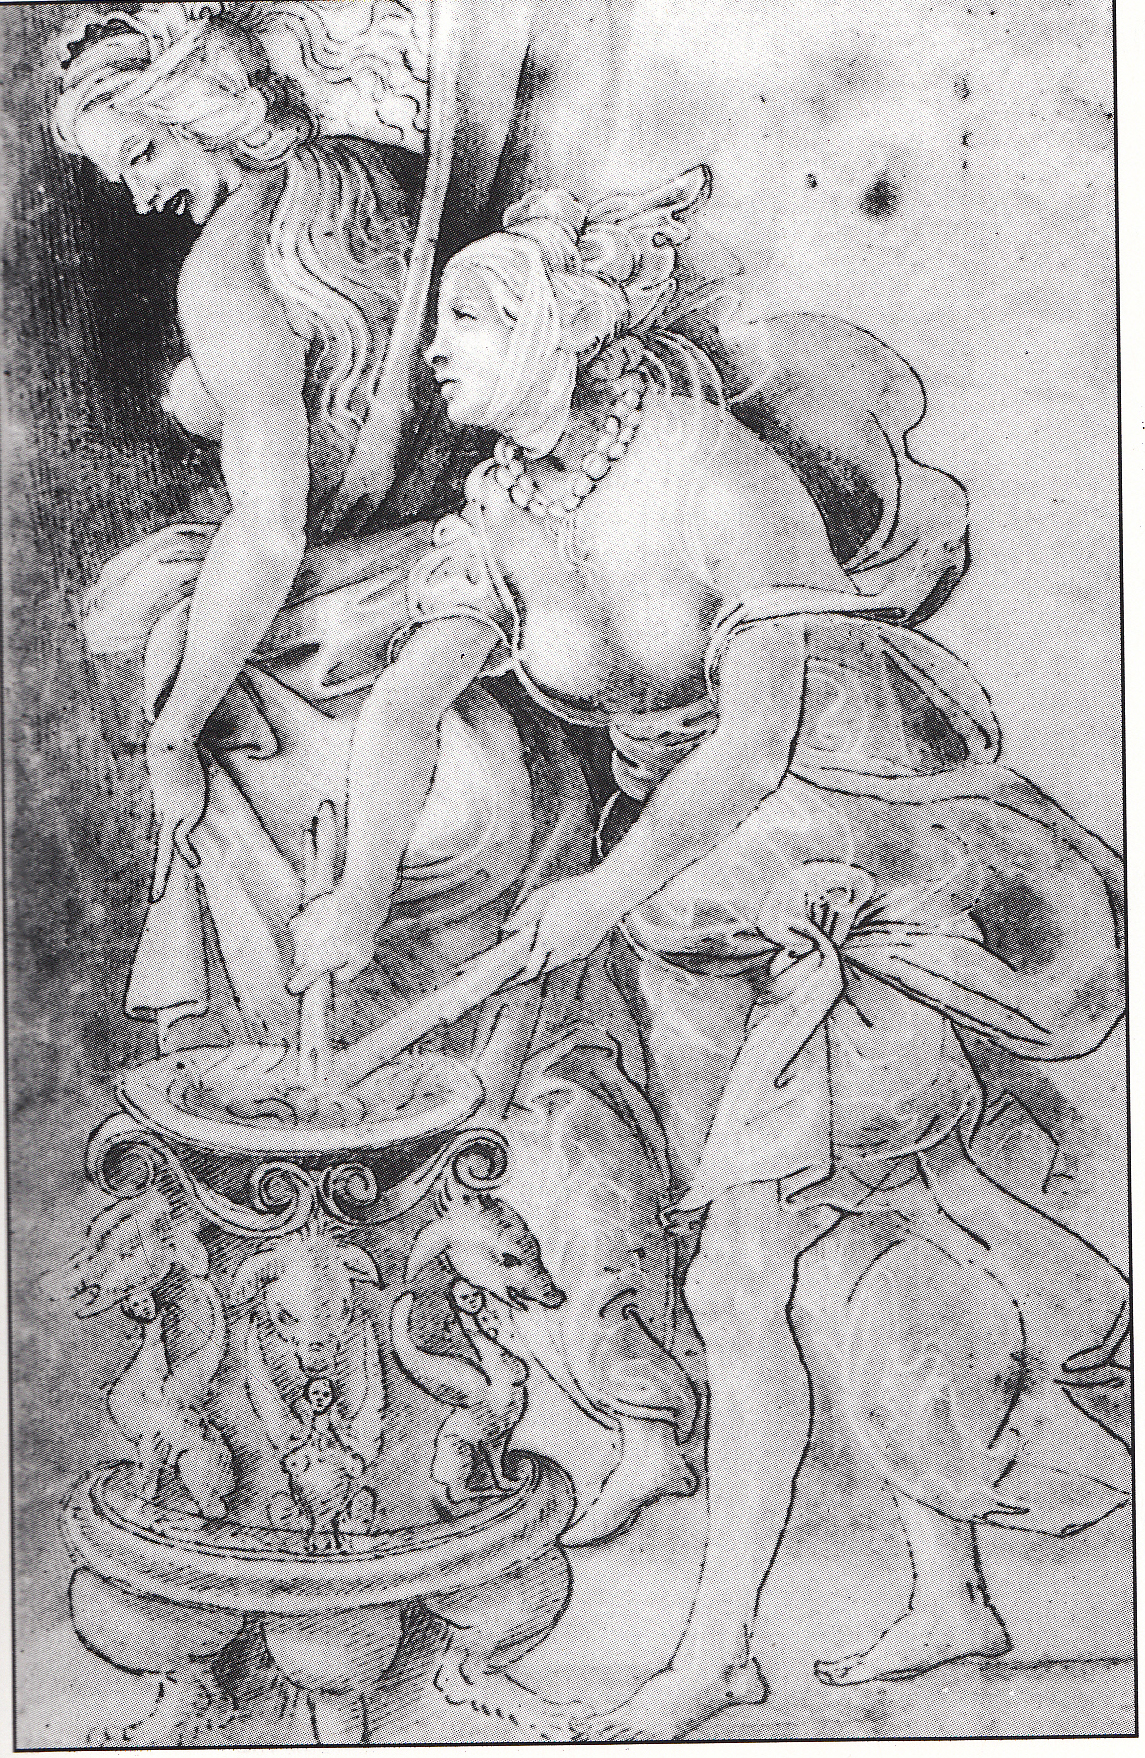 Questo bel disegno si trova nella Galleria degli Uffizi a Firenze. E' di Filippo Lippi e ritrae due streghe tanto attraenti che sarebbe un vero peccato bruciarle.